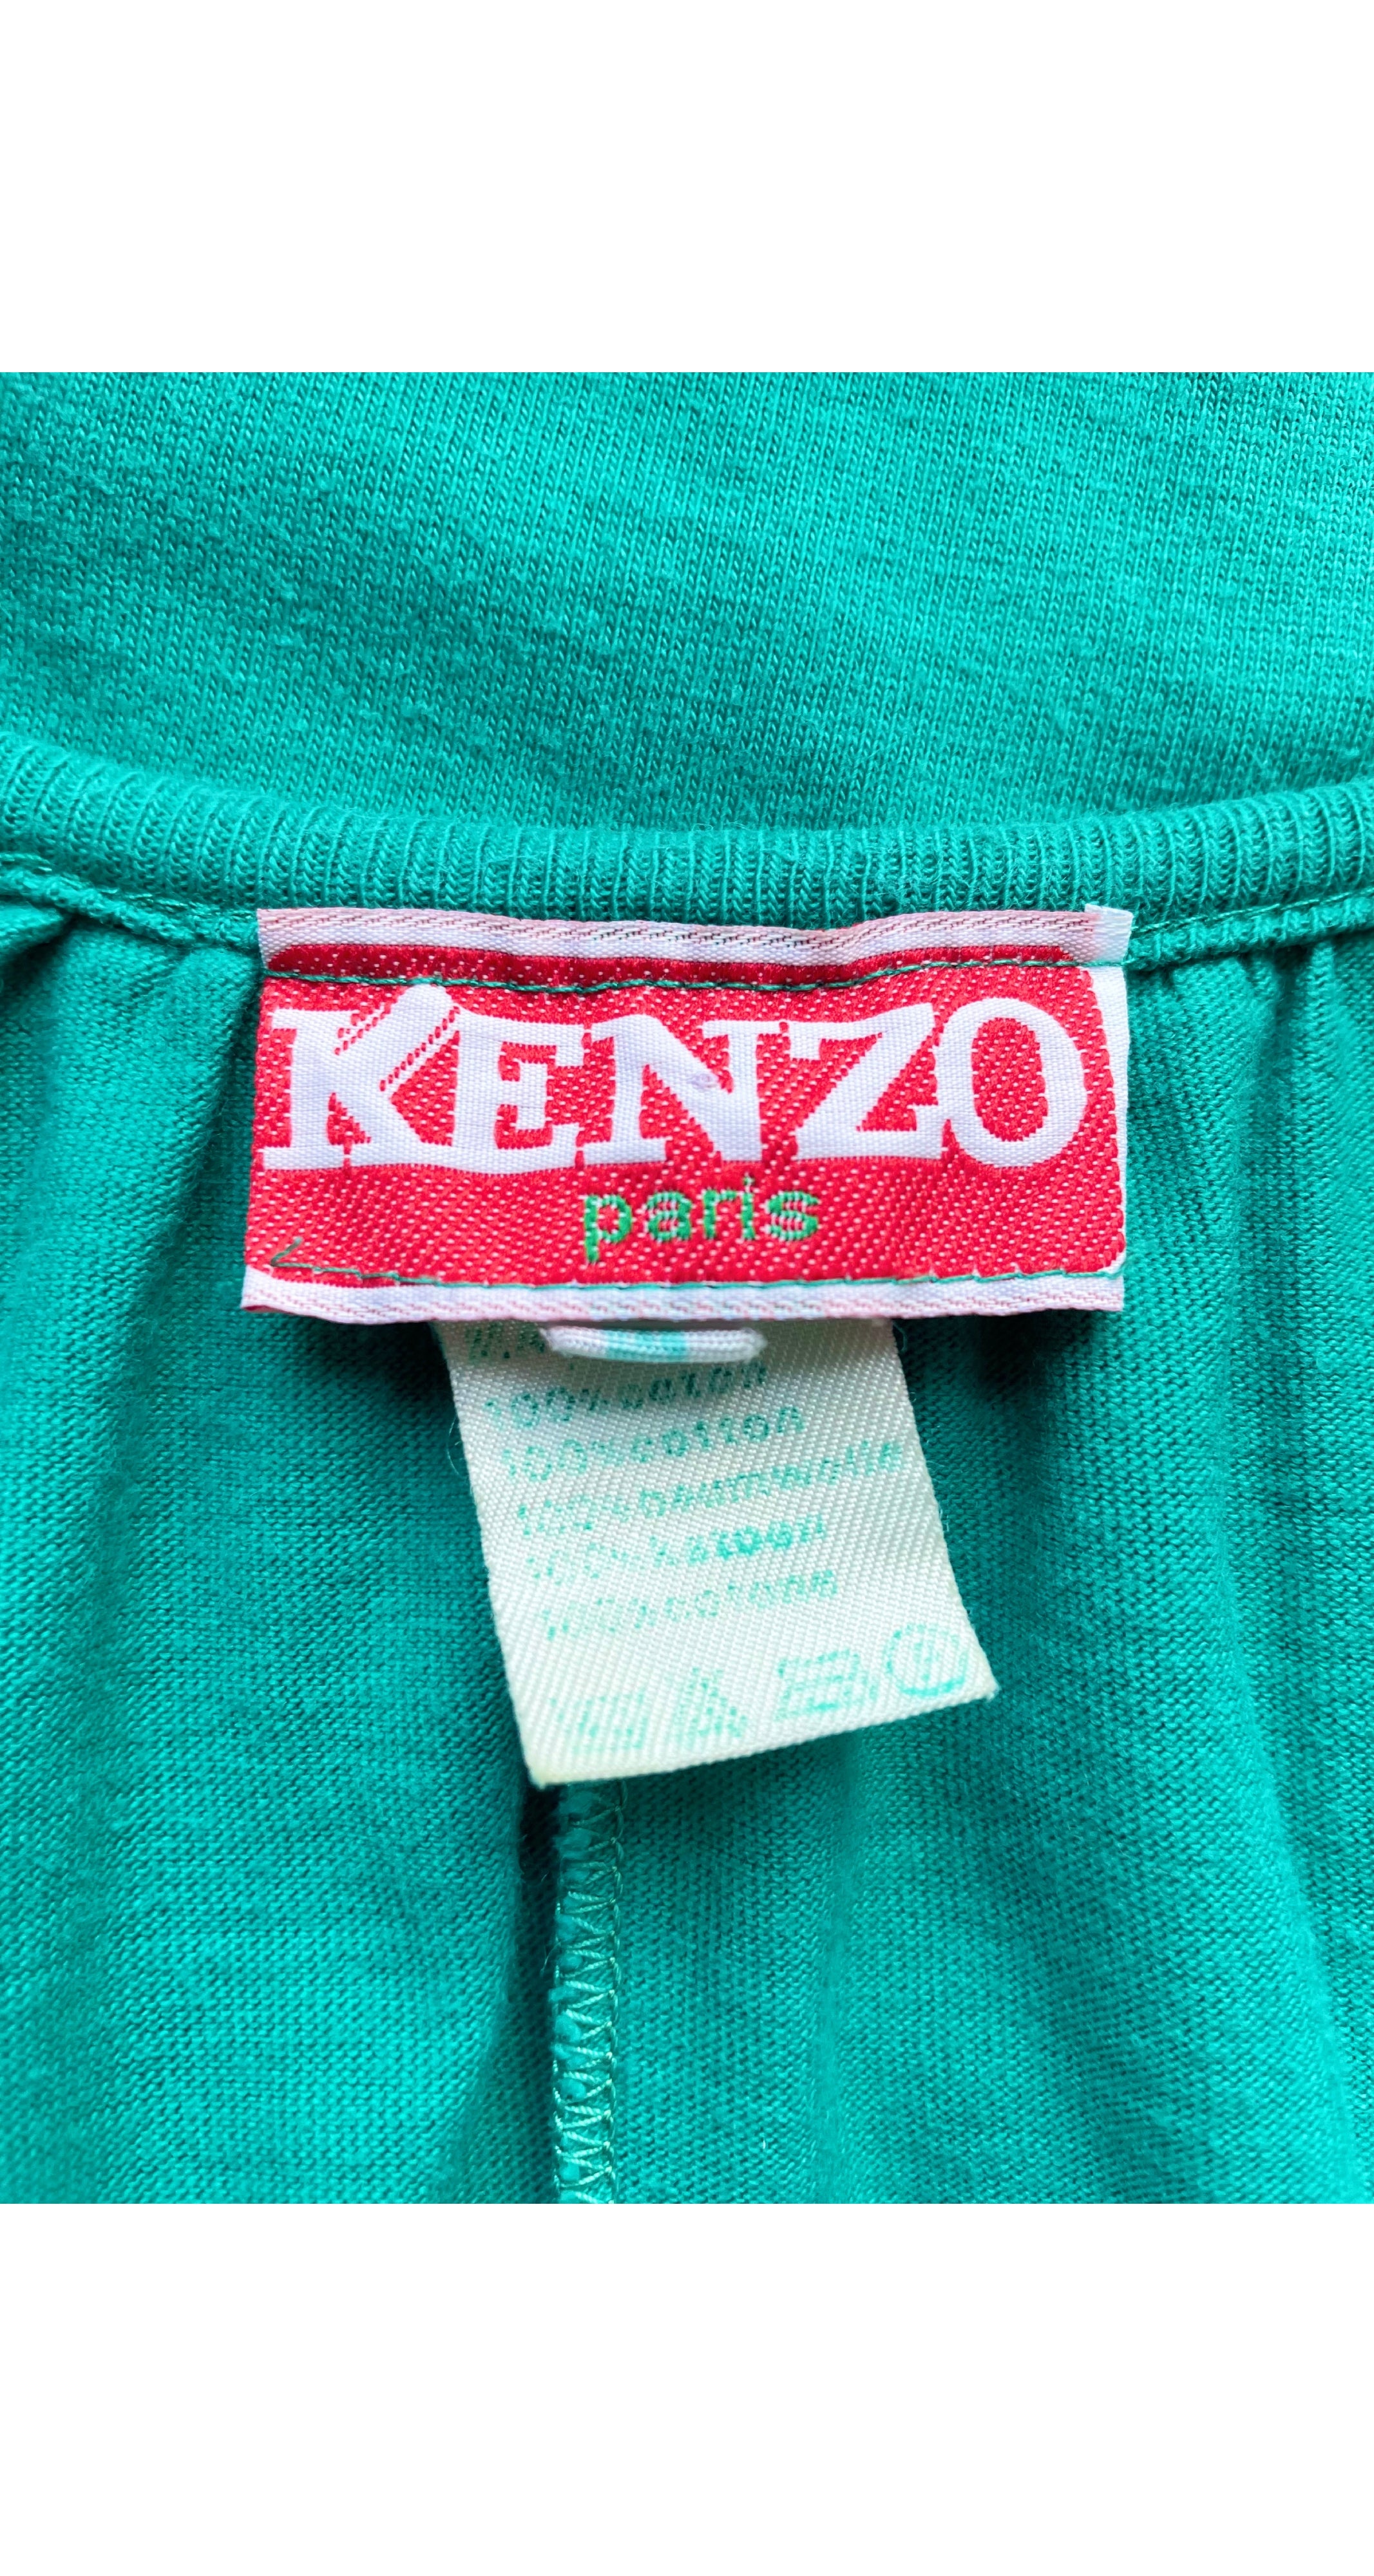 1980s Turquoise Cotton Jersey Sleeveless Jumpsuit